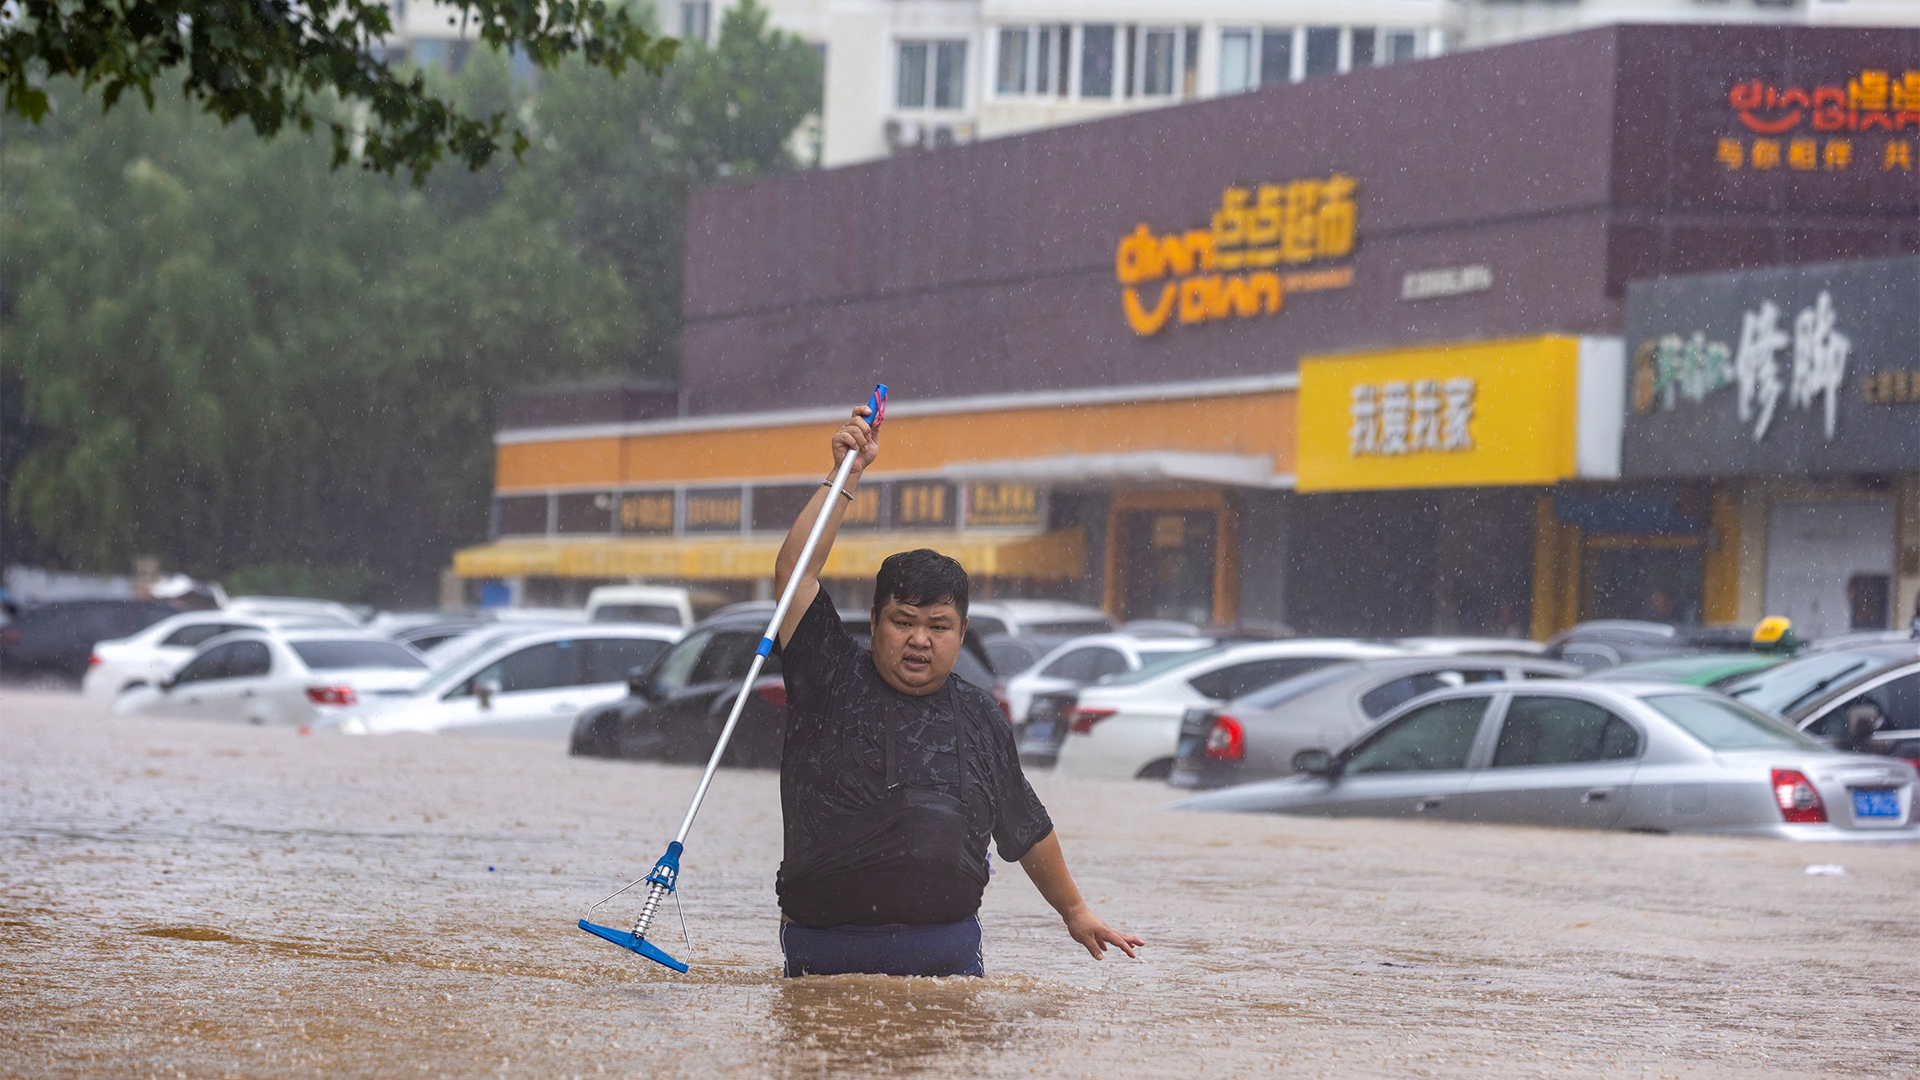 إعصار دوكسوري يتسبب بفيضانات وأضرار في بكين وضواحيها | التقارير الإخبارية